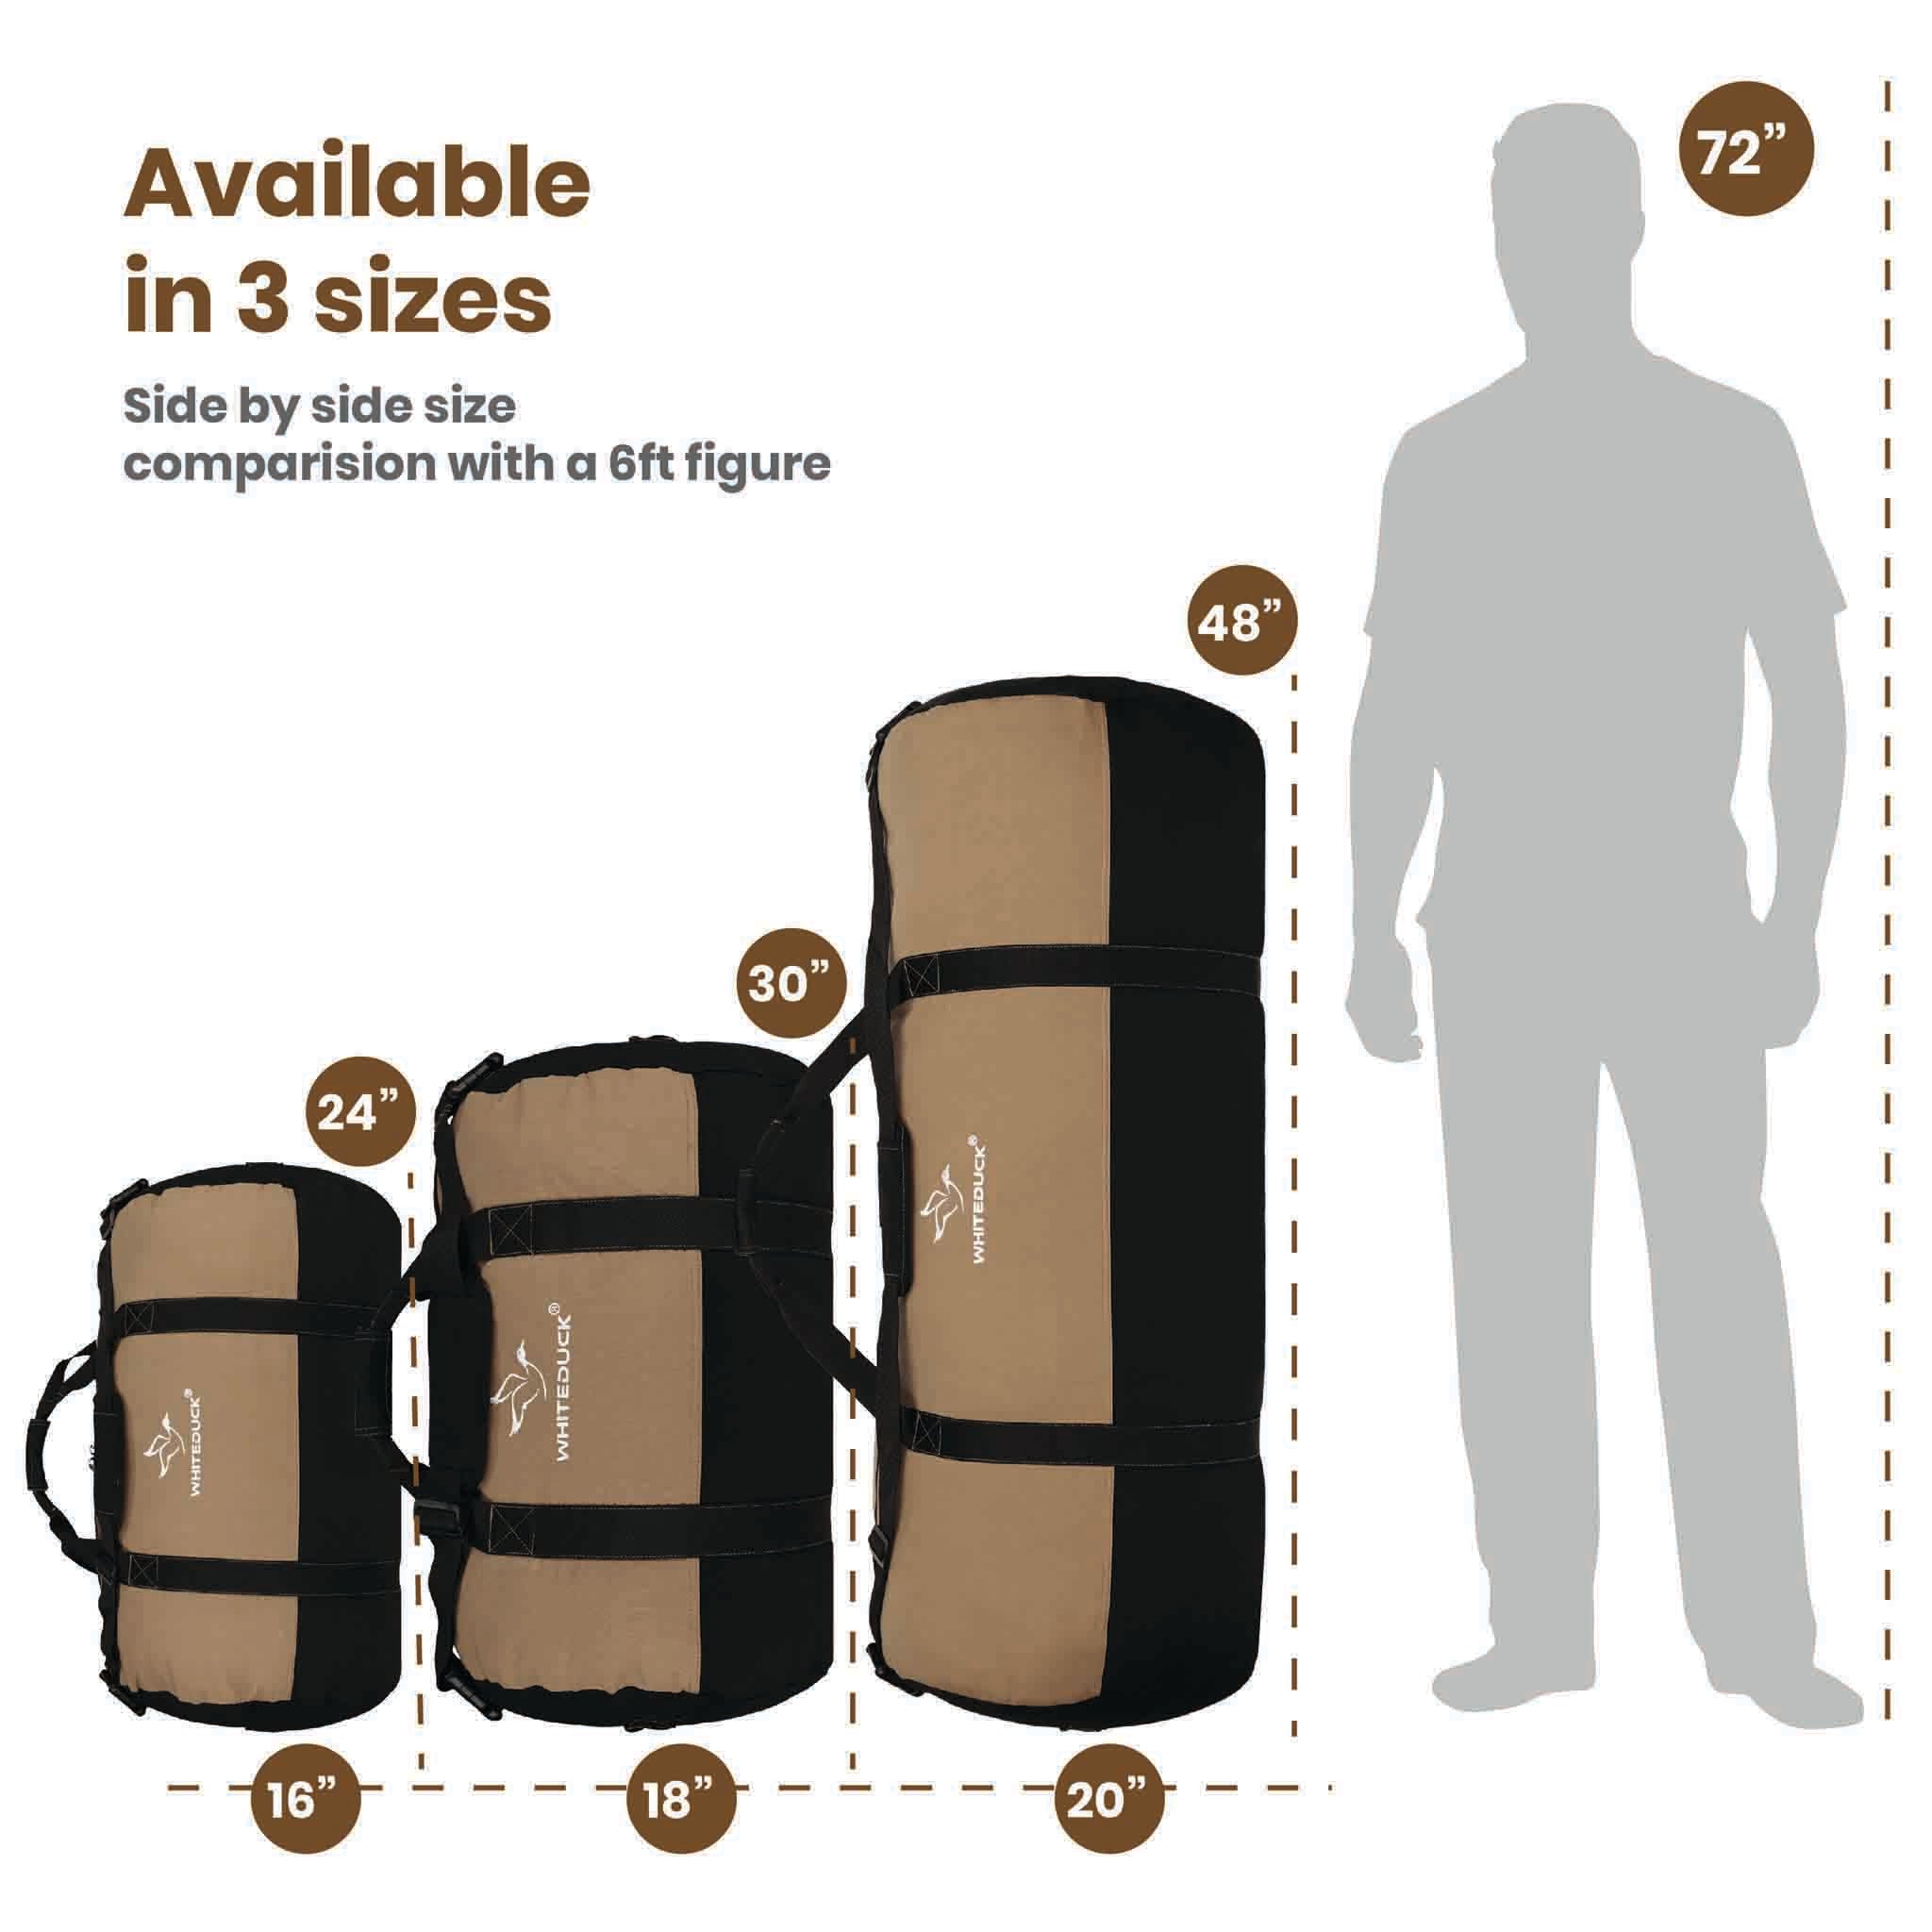 eBags 24 Inch Duffel Bag Weekend Luggage Blue Travel - Body Logic